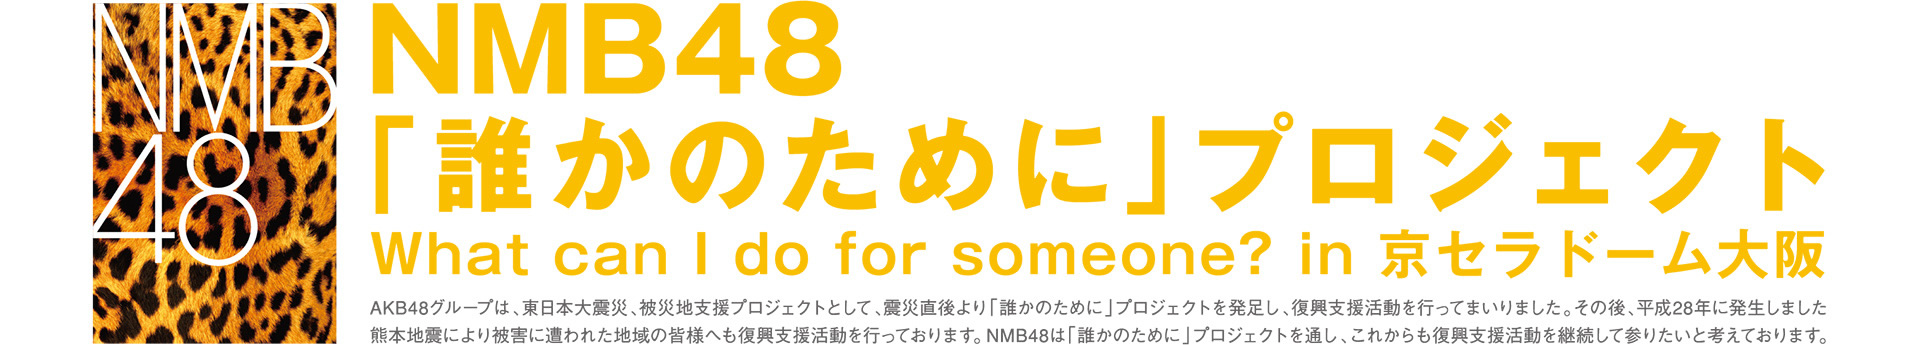 NMB48「誰かのために」プロジェクト